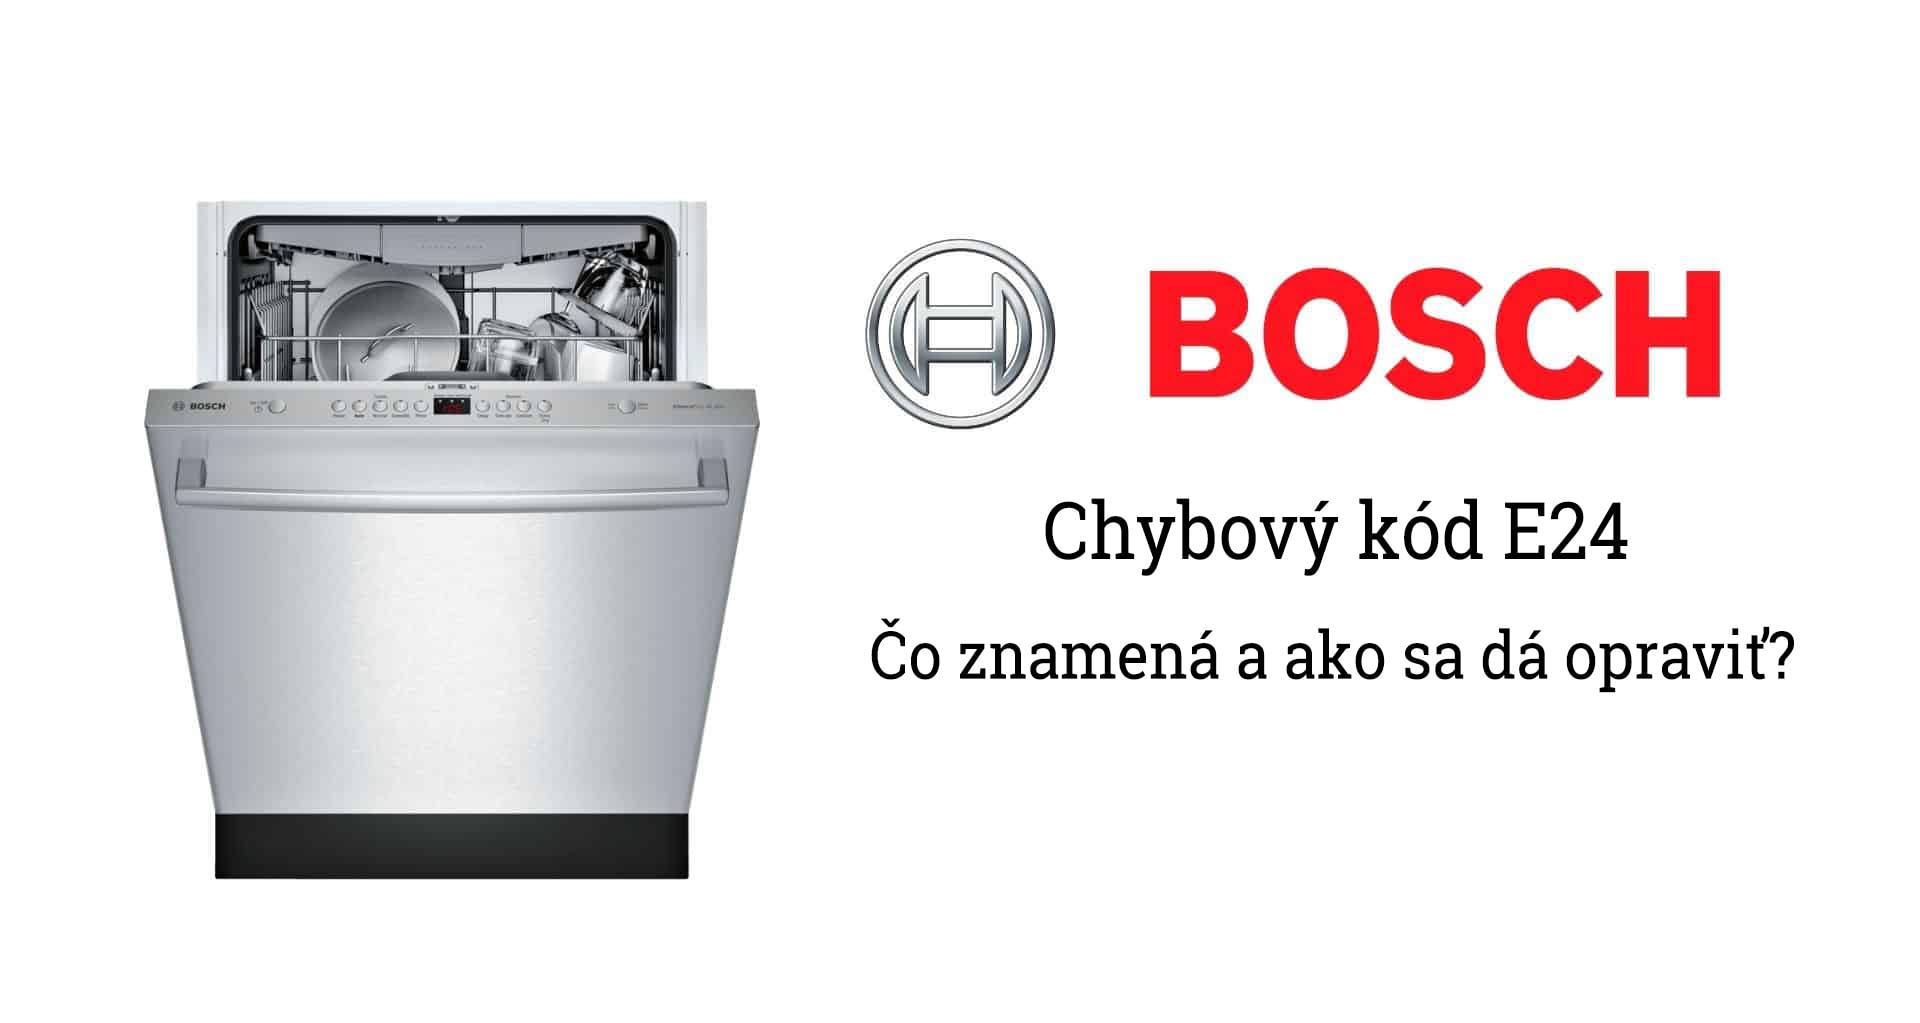 Poruchy umývačky Bosch - chybový kód E24